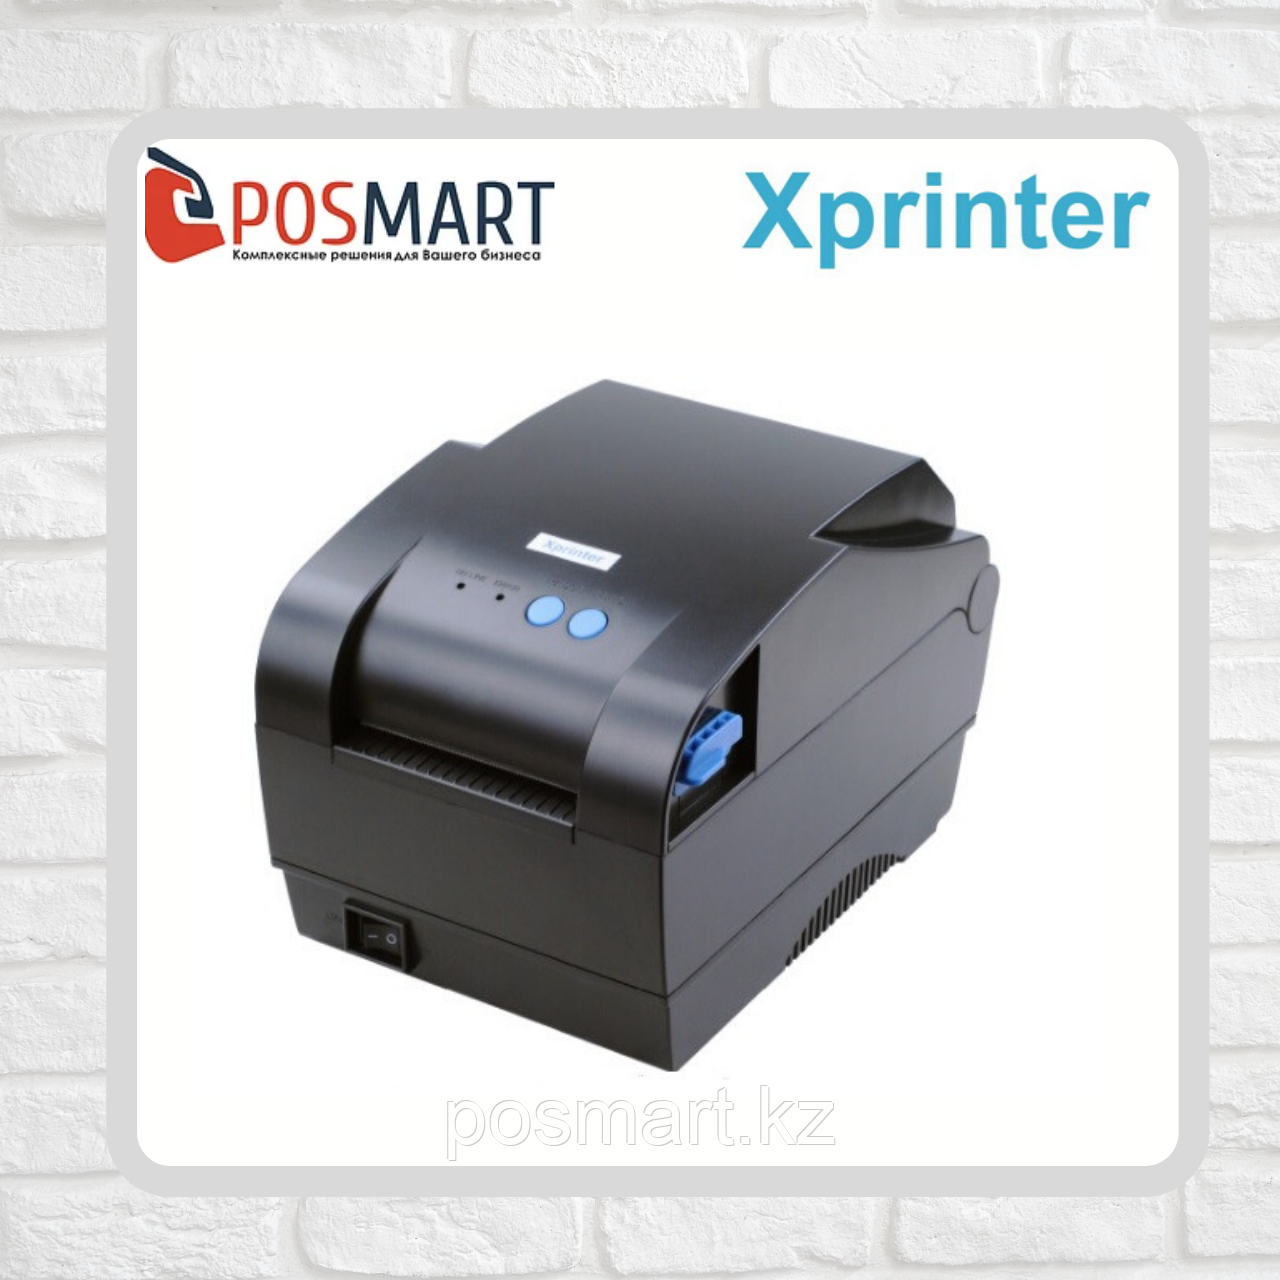 Драйвер на принтер xprinter xp 365b. Xprinter XP-365b. Принтер этикеток Xprinter XP-365b. Принтер этикеток Xprinter XP-330b. Xprinter XP-365b параметры.